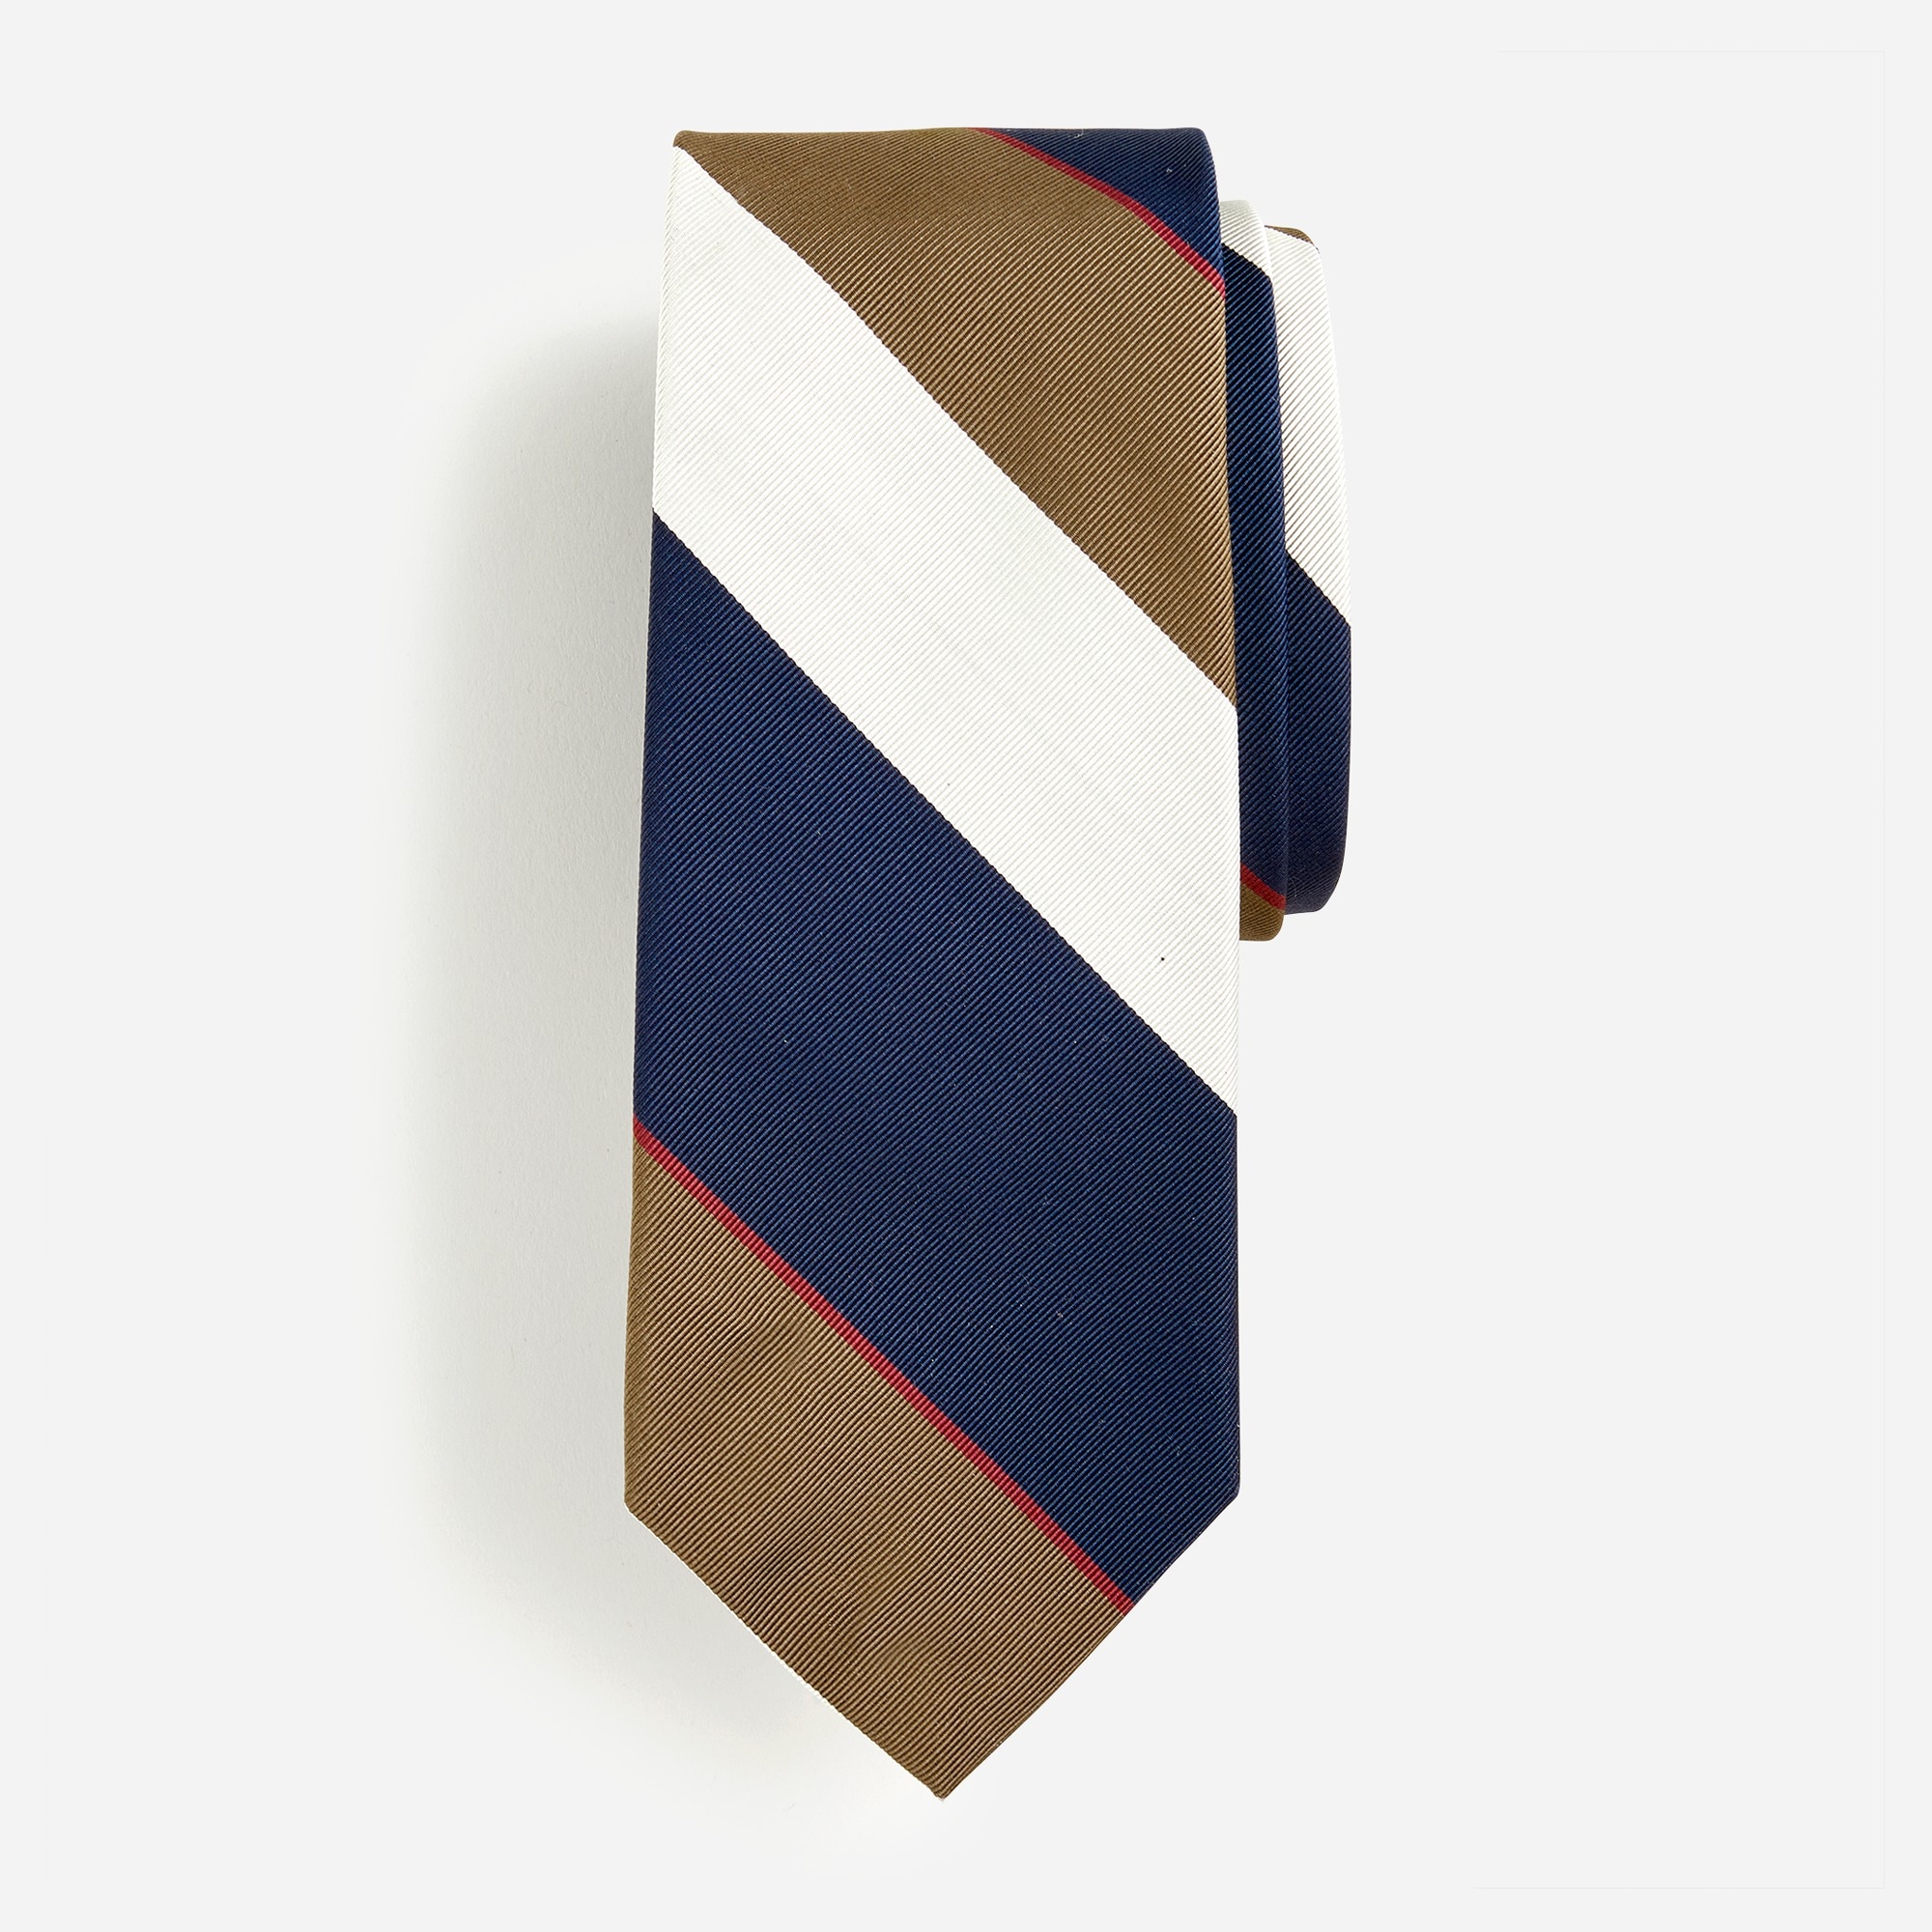  Wide-stripe tie in English silk blend